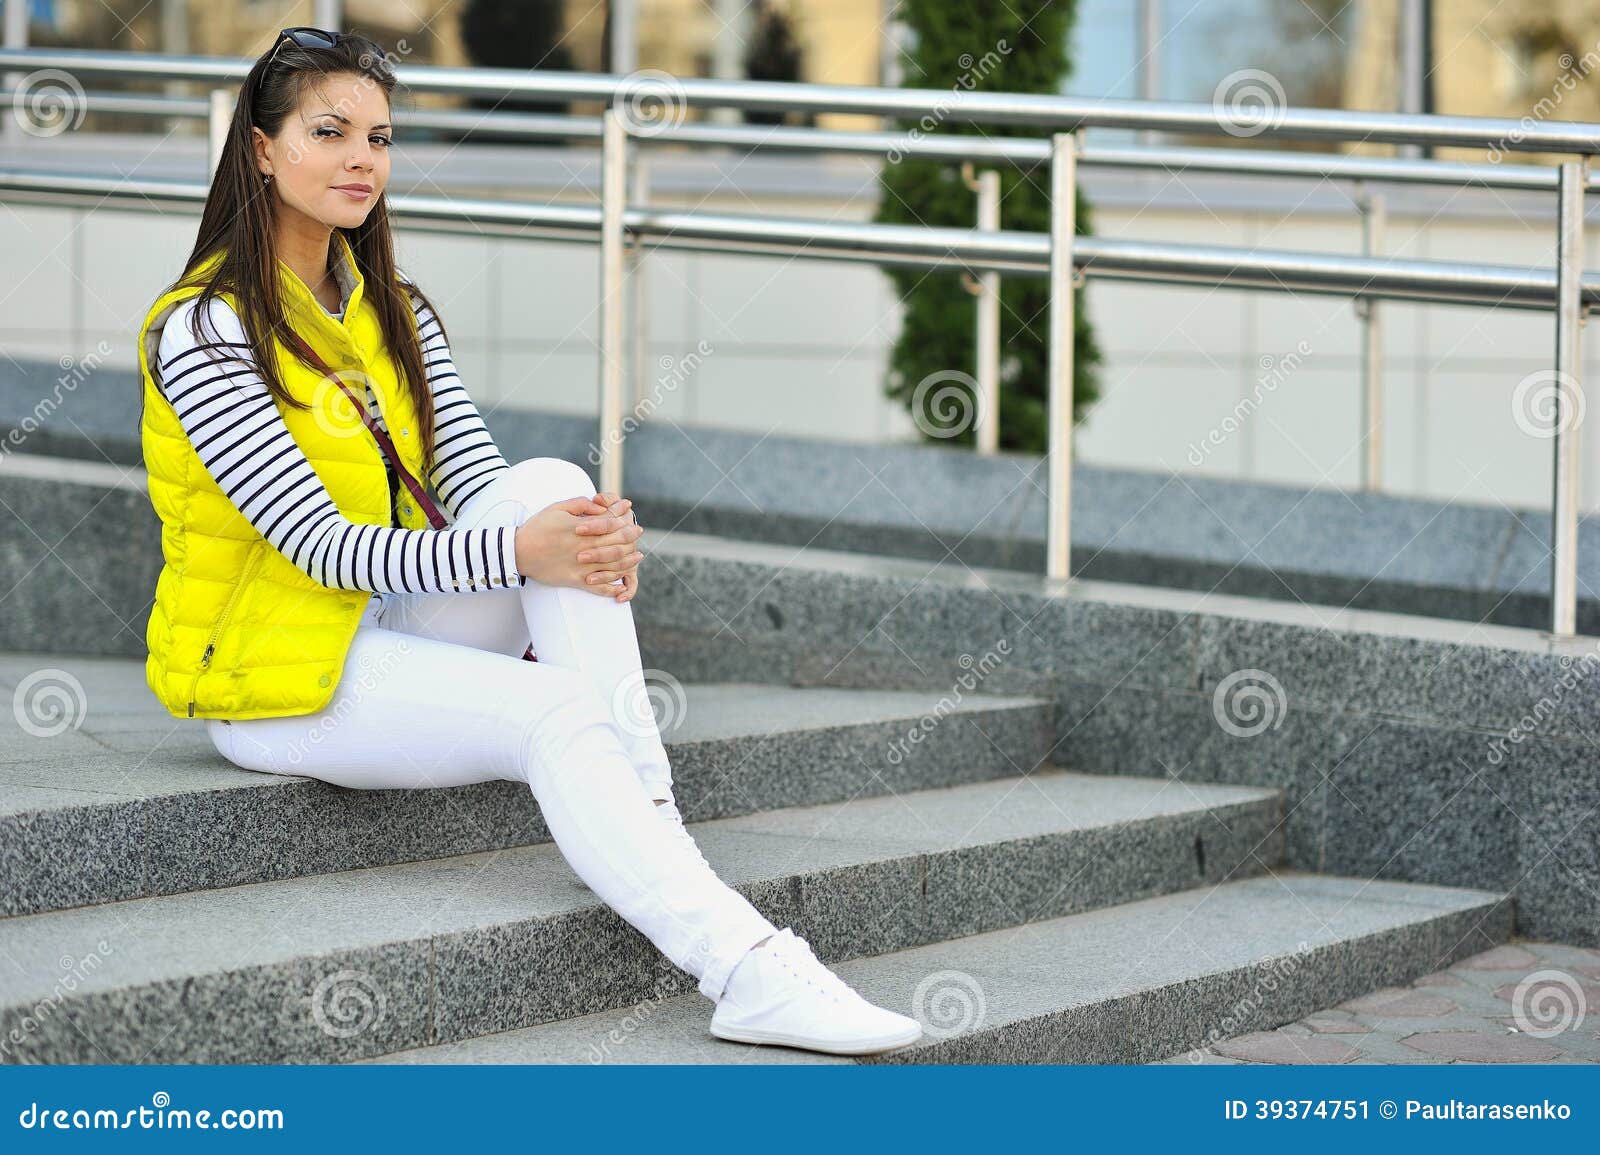 Outdoor Portrait of Beautiful Stylish Teen Girl Stock Image - Image of ...